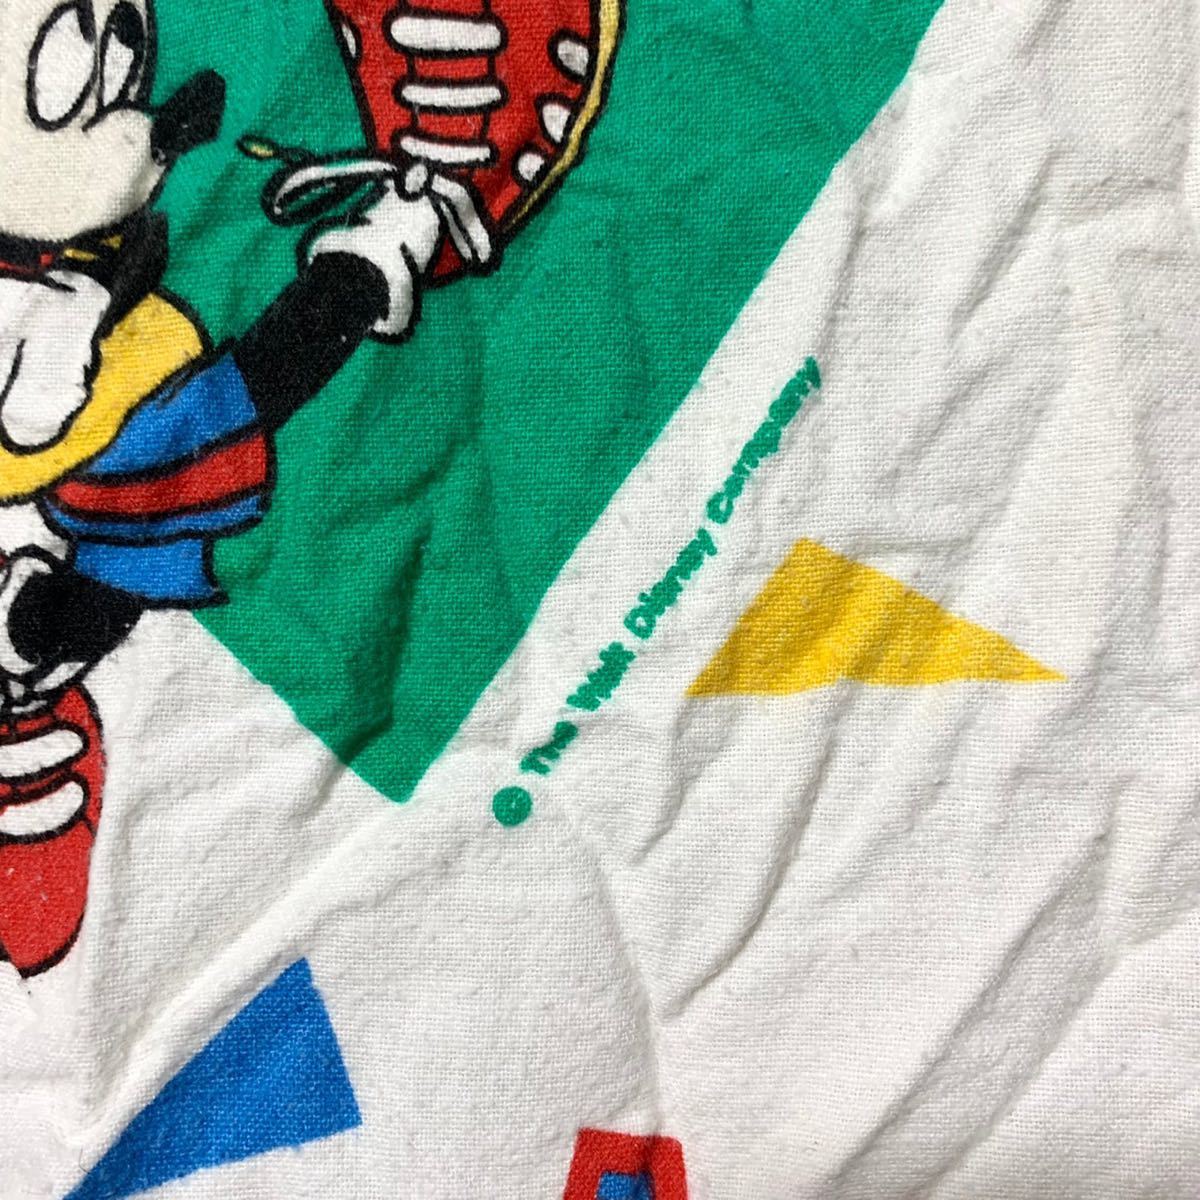 # Vintage USA производства Disney Disney Mickey Mouse спорт Delta рисунок фланель материалы Flat модель спальное место простыня переделка ткань #